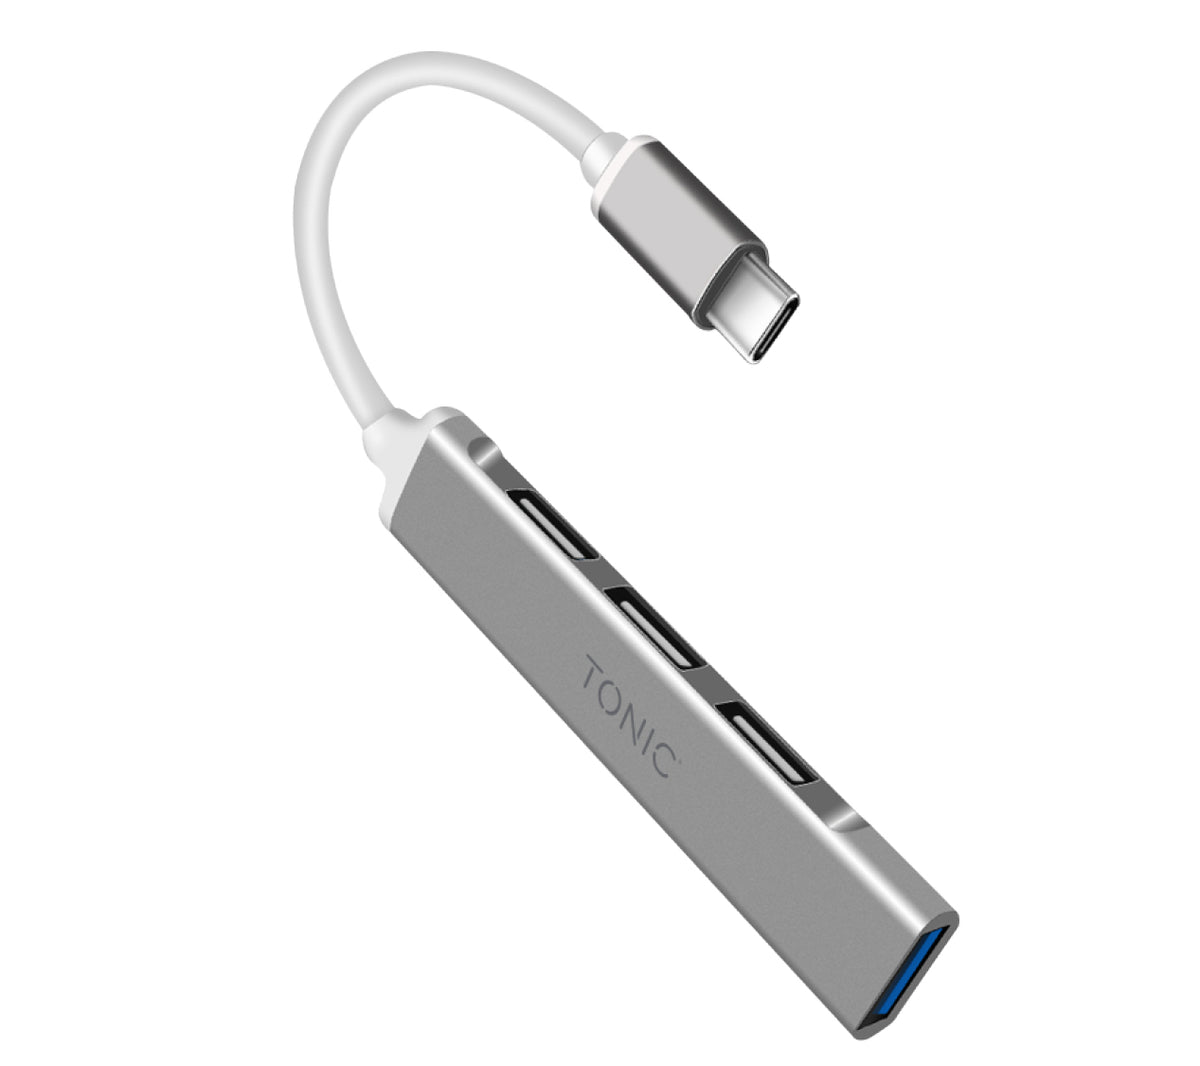 ACROPAQ C7 - Multiprise 4 voies 2500W avec chargeur rapide 4x USB-A Auto-ID  Pour smartphones/tablettes Blanc